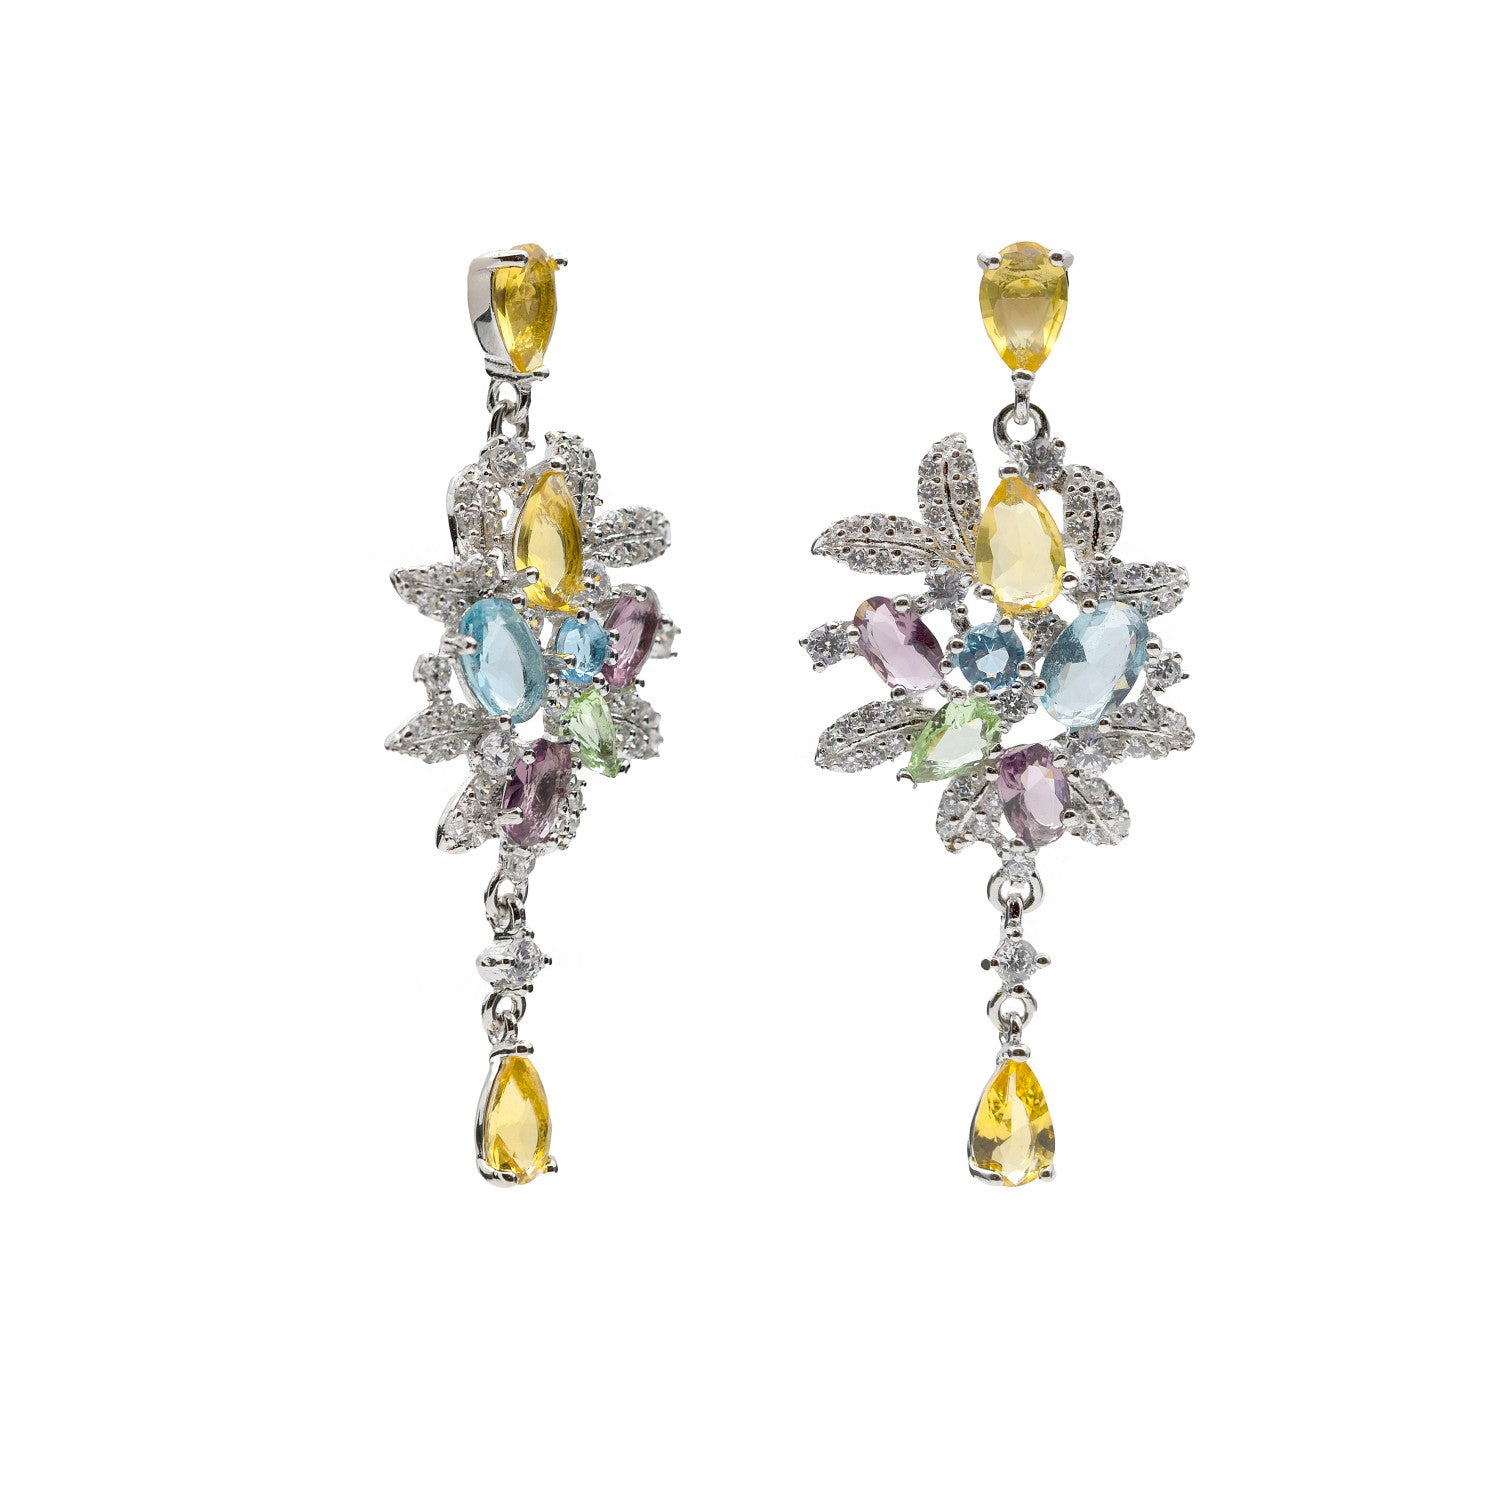 Pendientes gemas de colores barroco en motivos florales